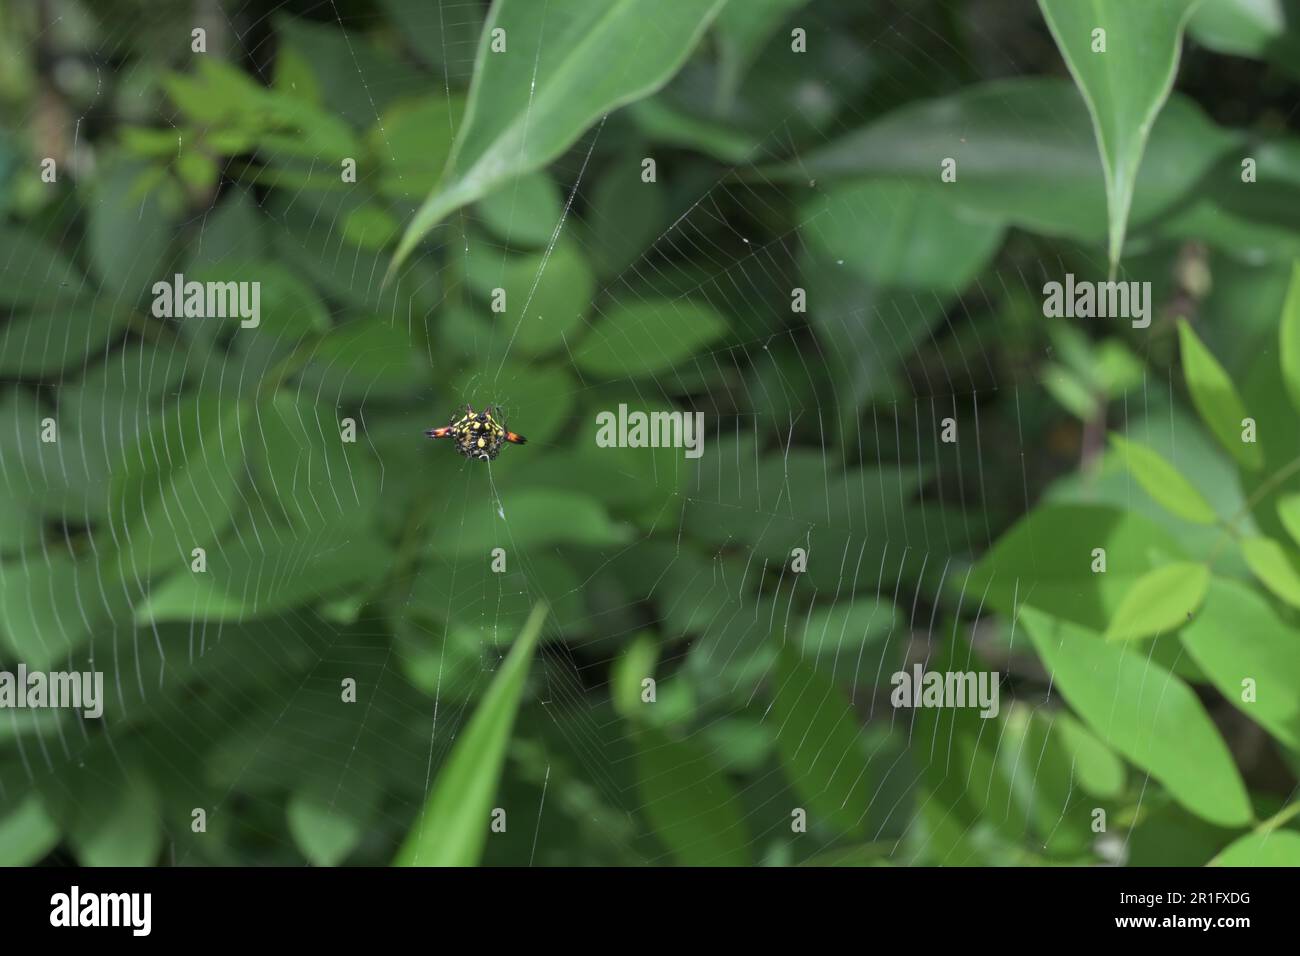 Vue ventrale d'une araignée de tisserand orientale (Gasteracantha Geminata) assise sur sa toile d'araignée au-dessus d'une zone herbeuse Banque D'Images